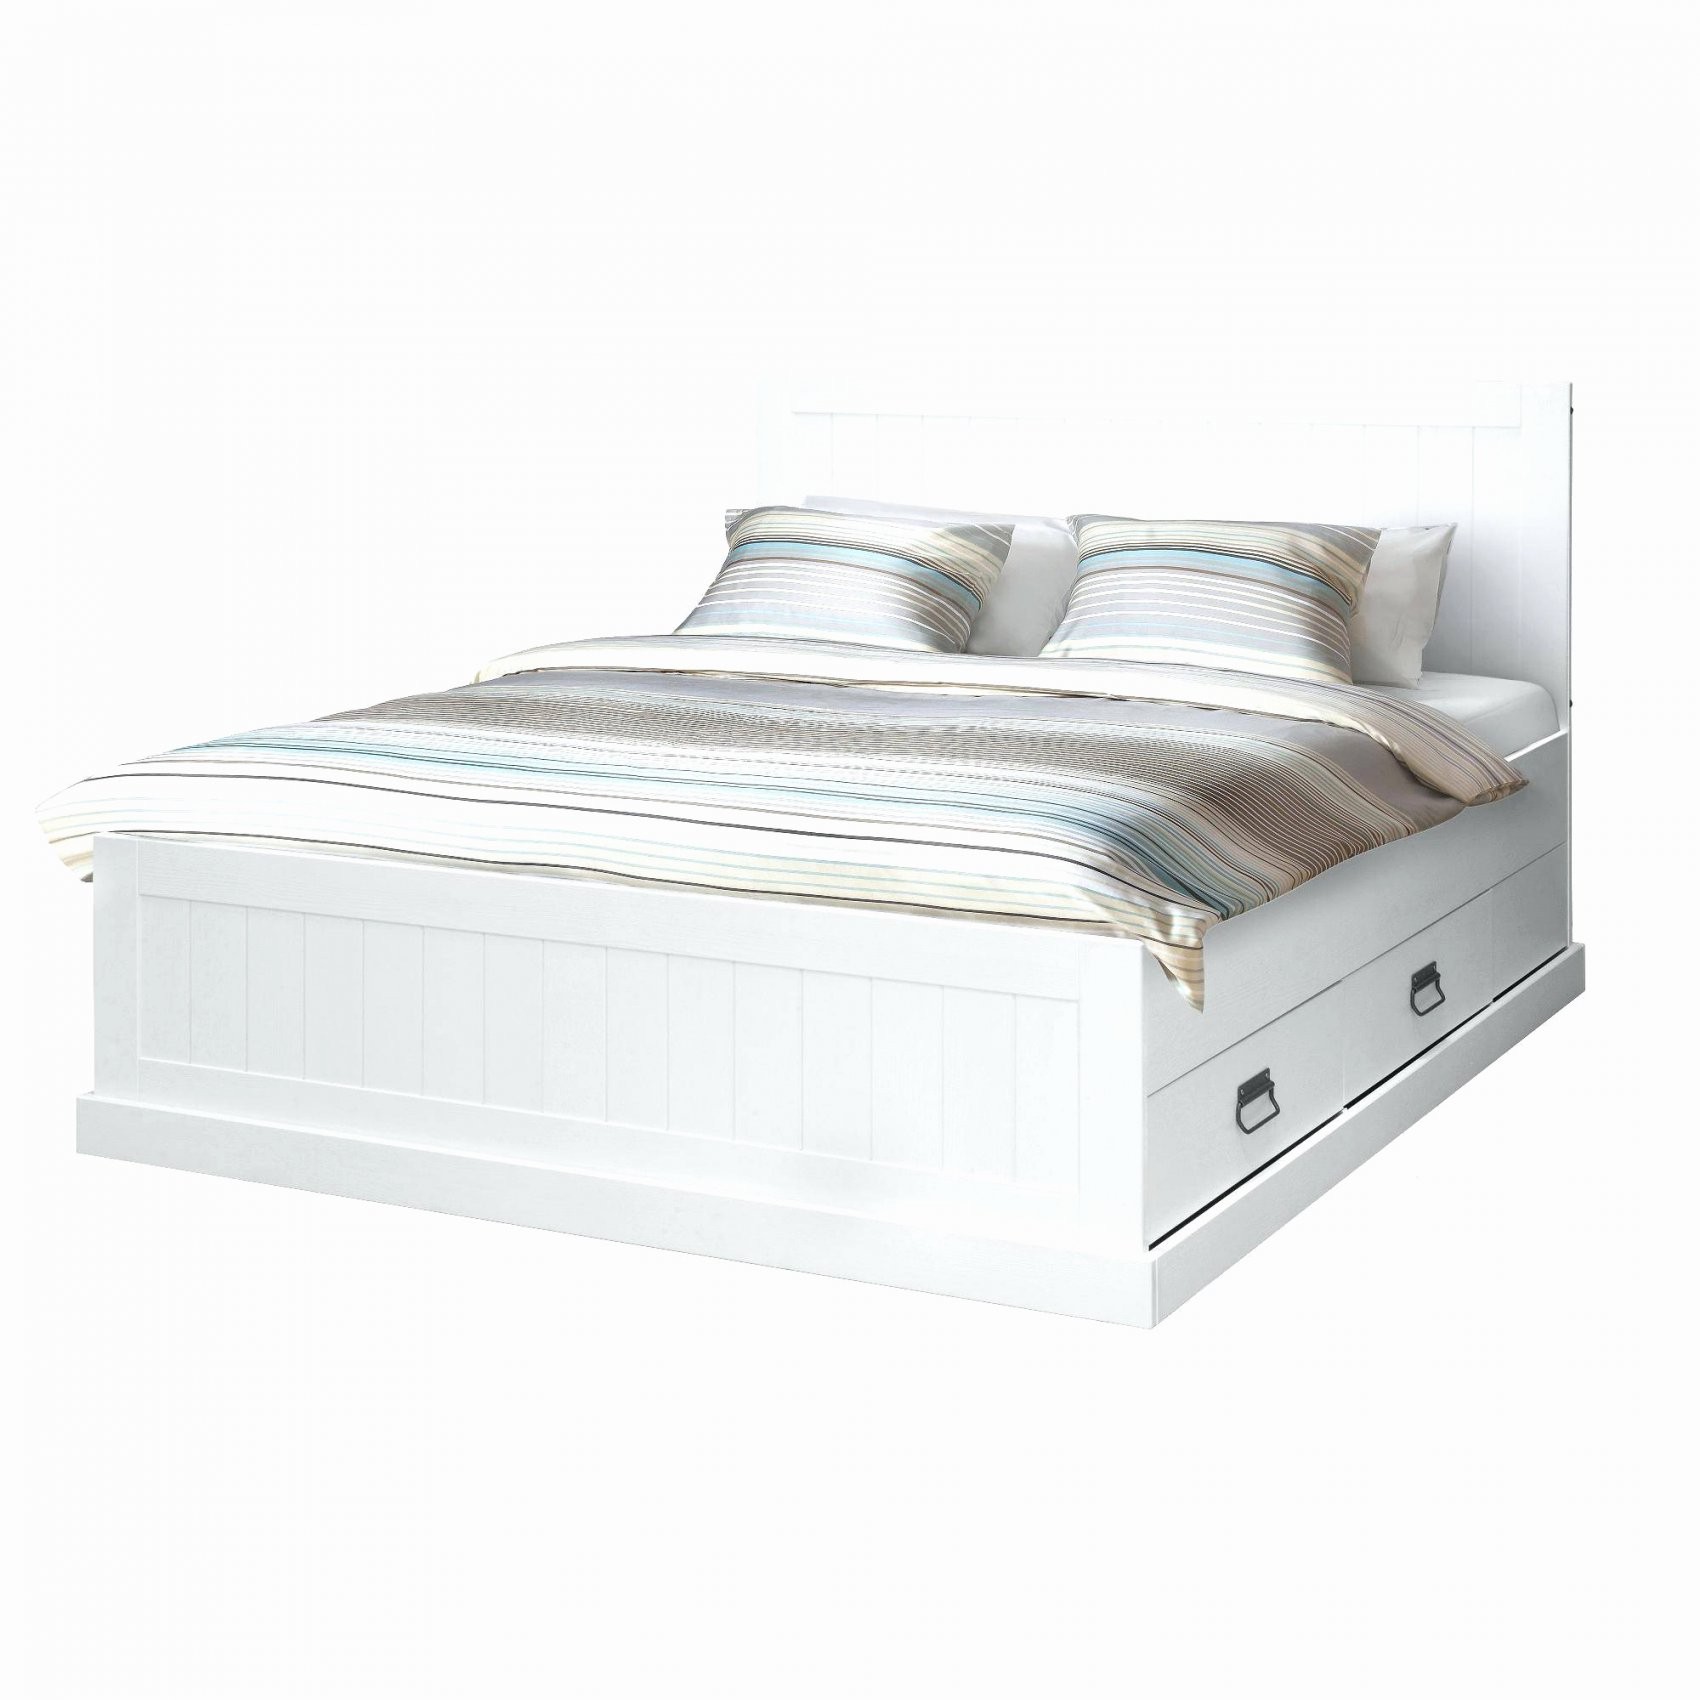 Otto Betten 140×200 Elegant Bett Mit Bettkasten 140×200 Frisch von Höffner Betten 140X200 Bild